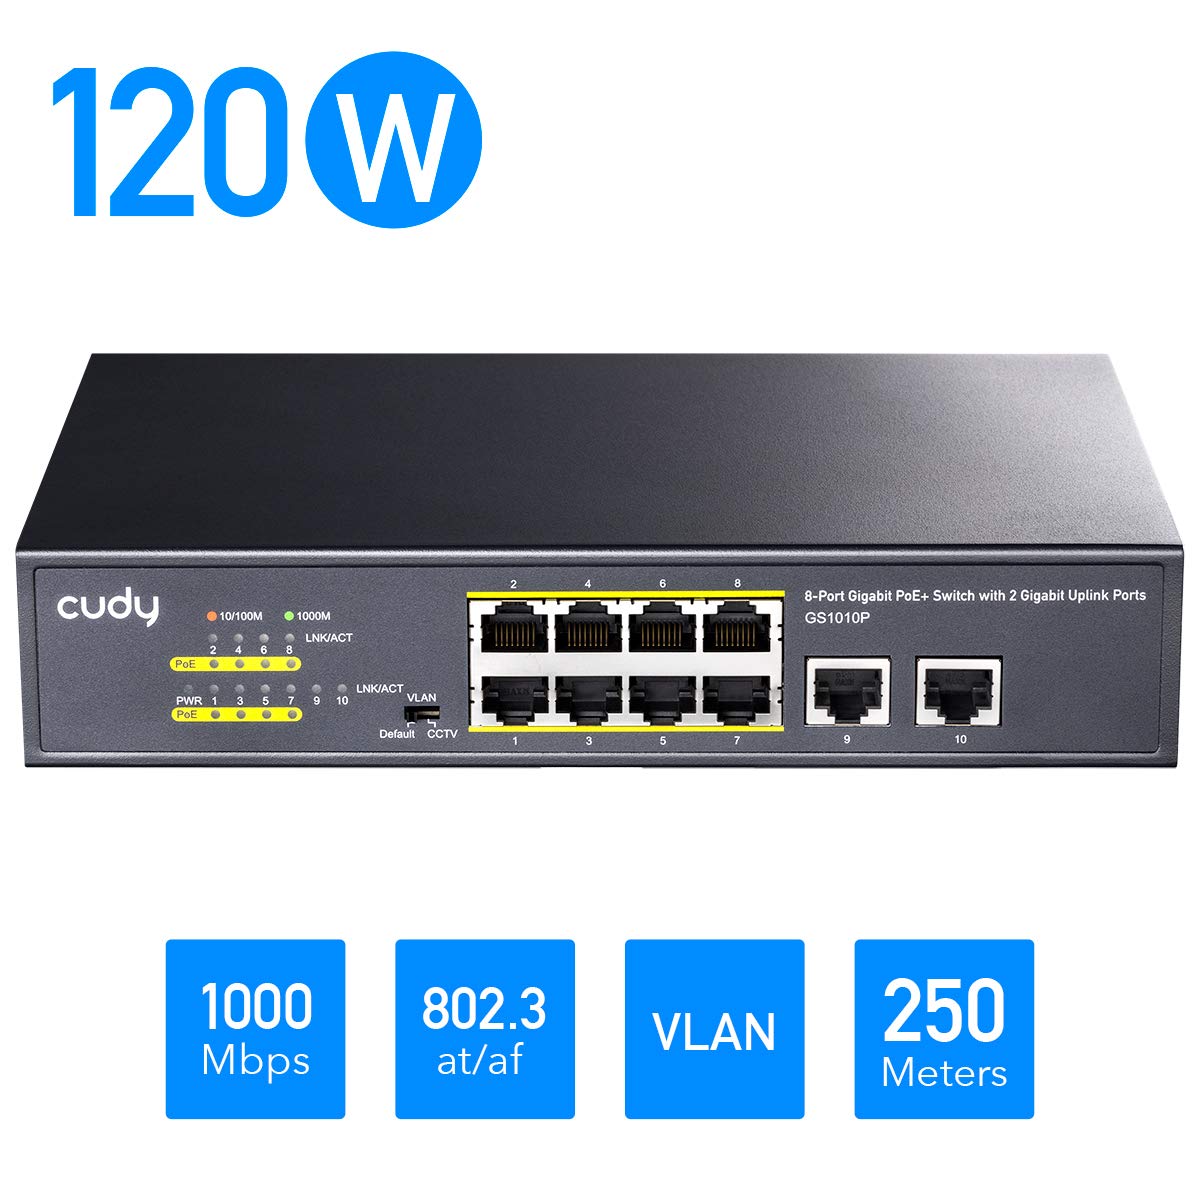 CUDY GS1010P - 8-Port 120W Gigabit PoE+ Switch with 2 Gigabit Uplink Ports